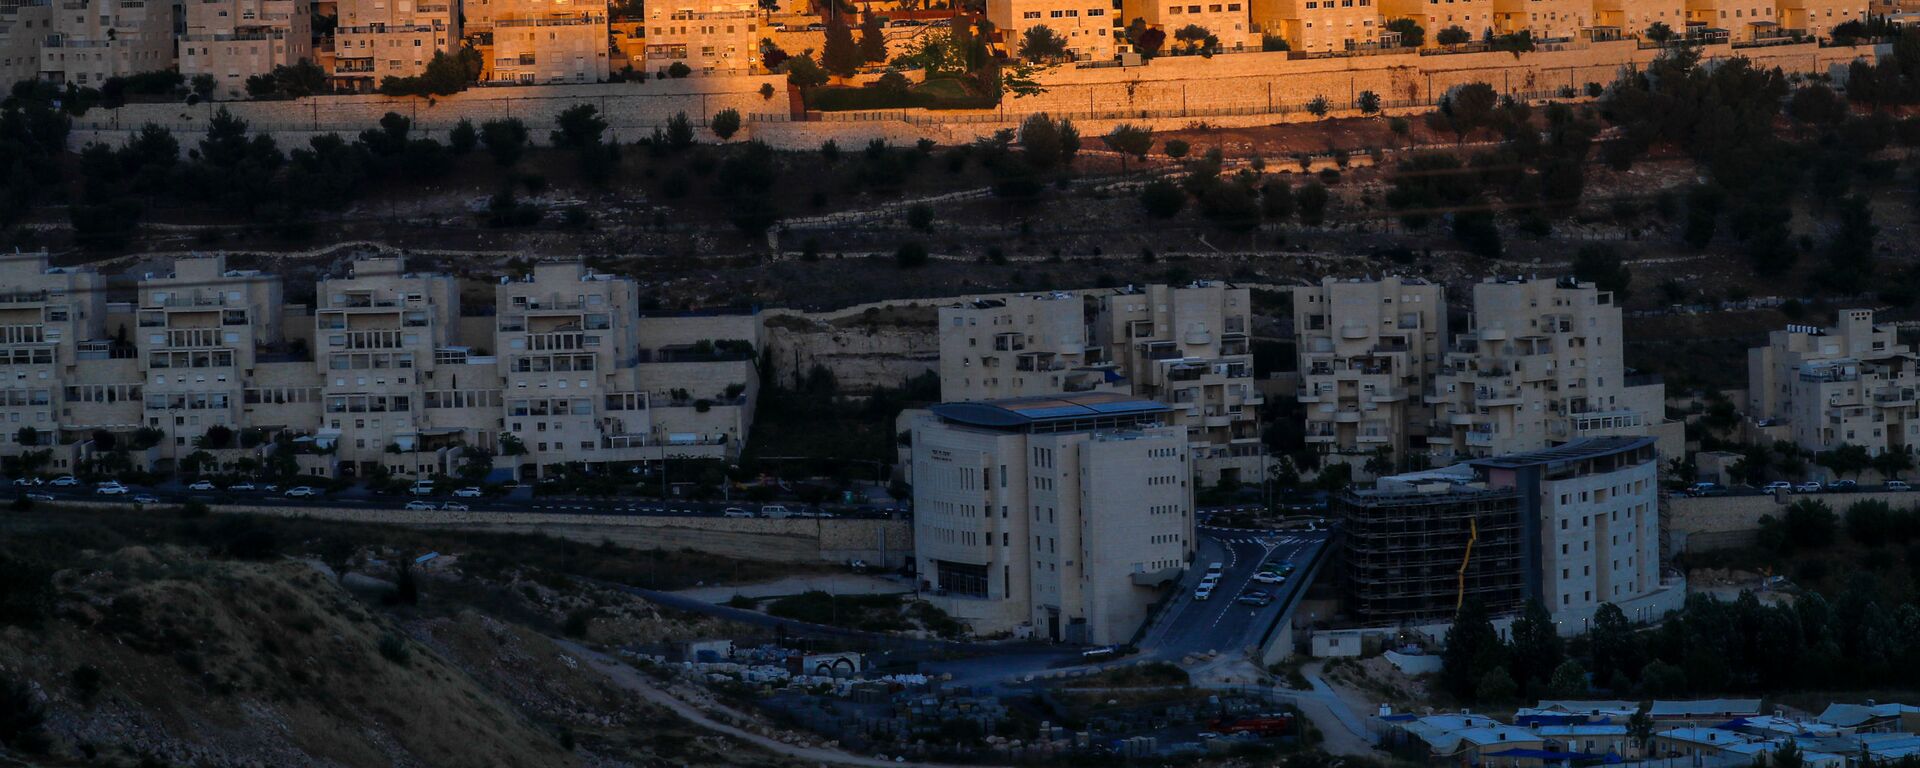 مستوطنات الضفة الغربية المحتلة، مستوطنة هار هوما في القدس الشرقية، 18 يونيو 2020 - سبوتنيك عربي, 1920, 21.09.2021